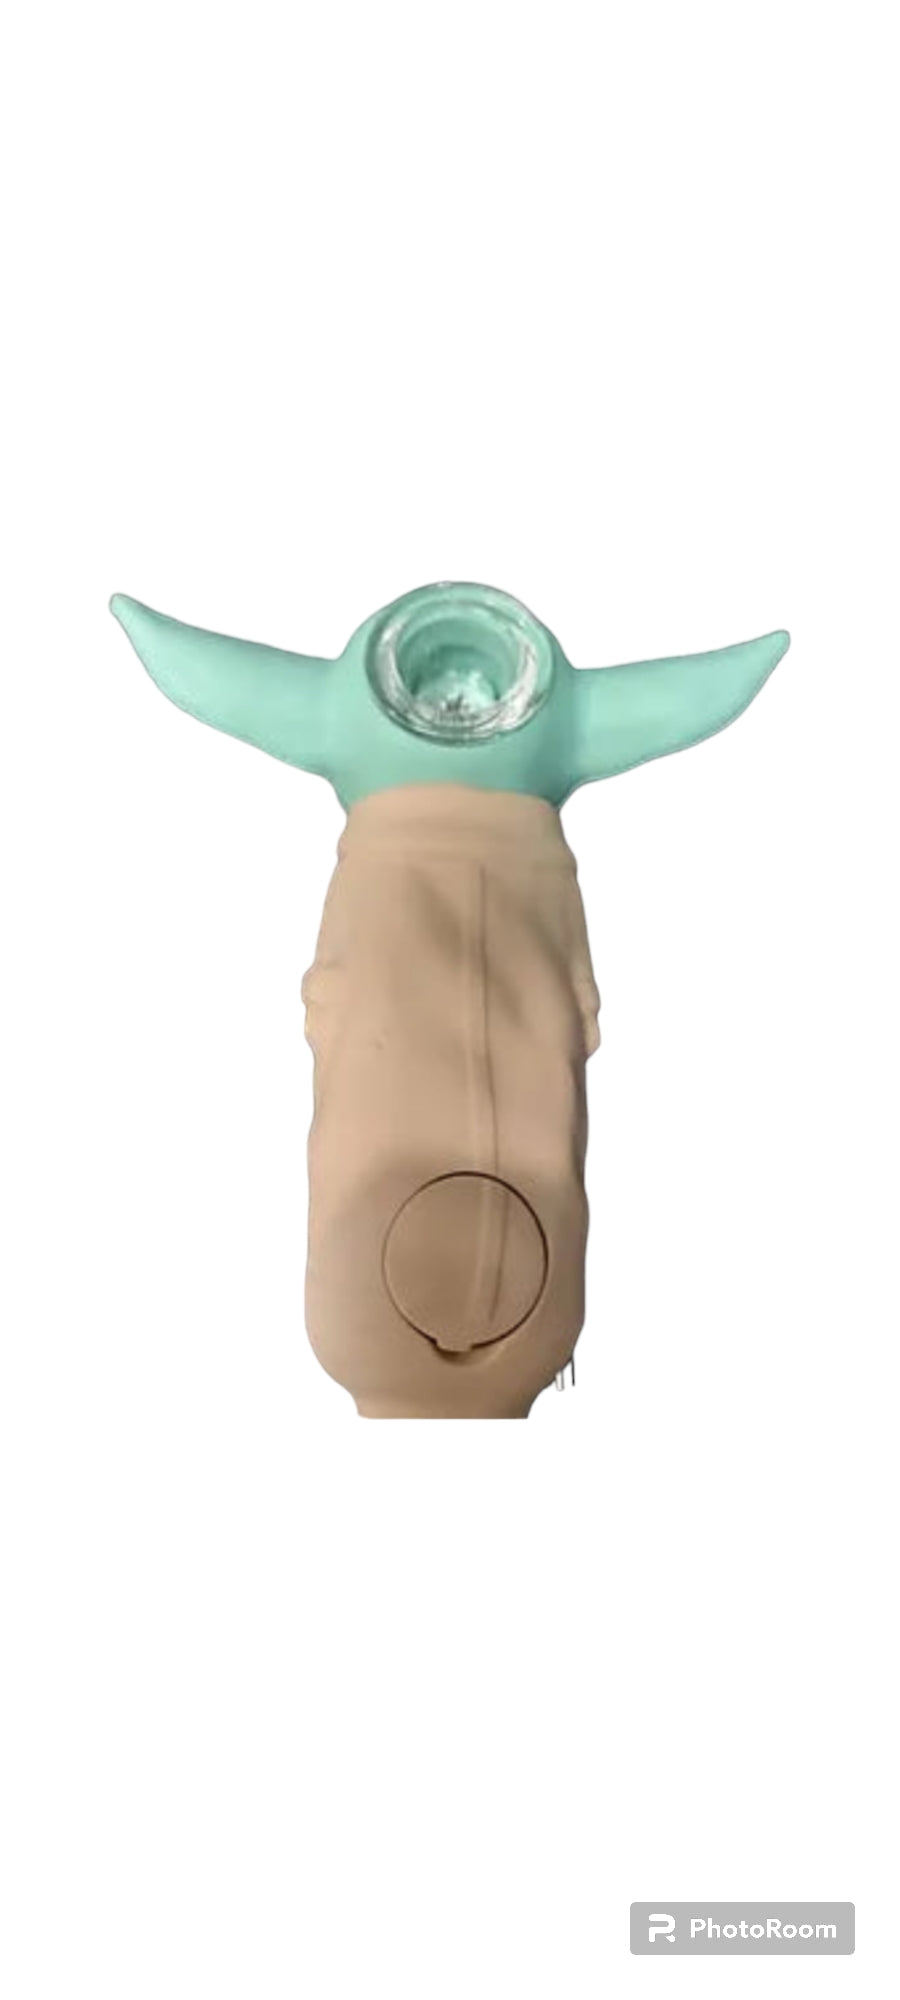 Yoda hand pipe